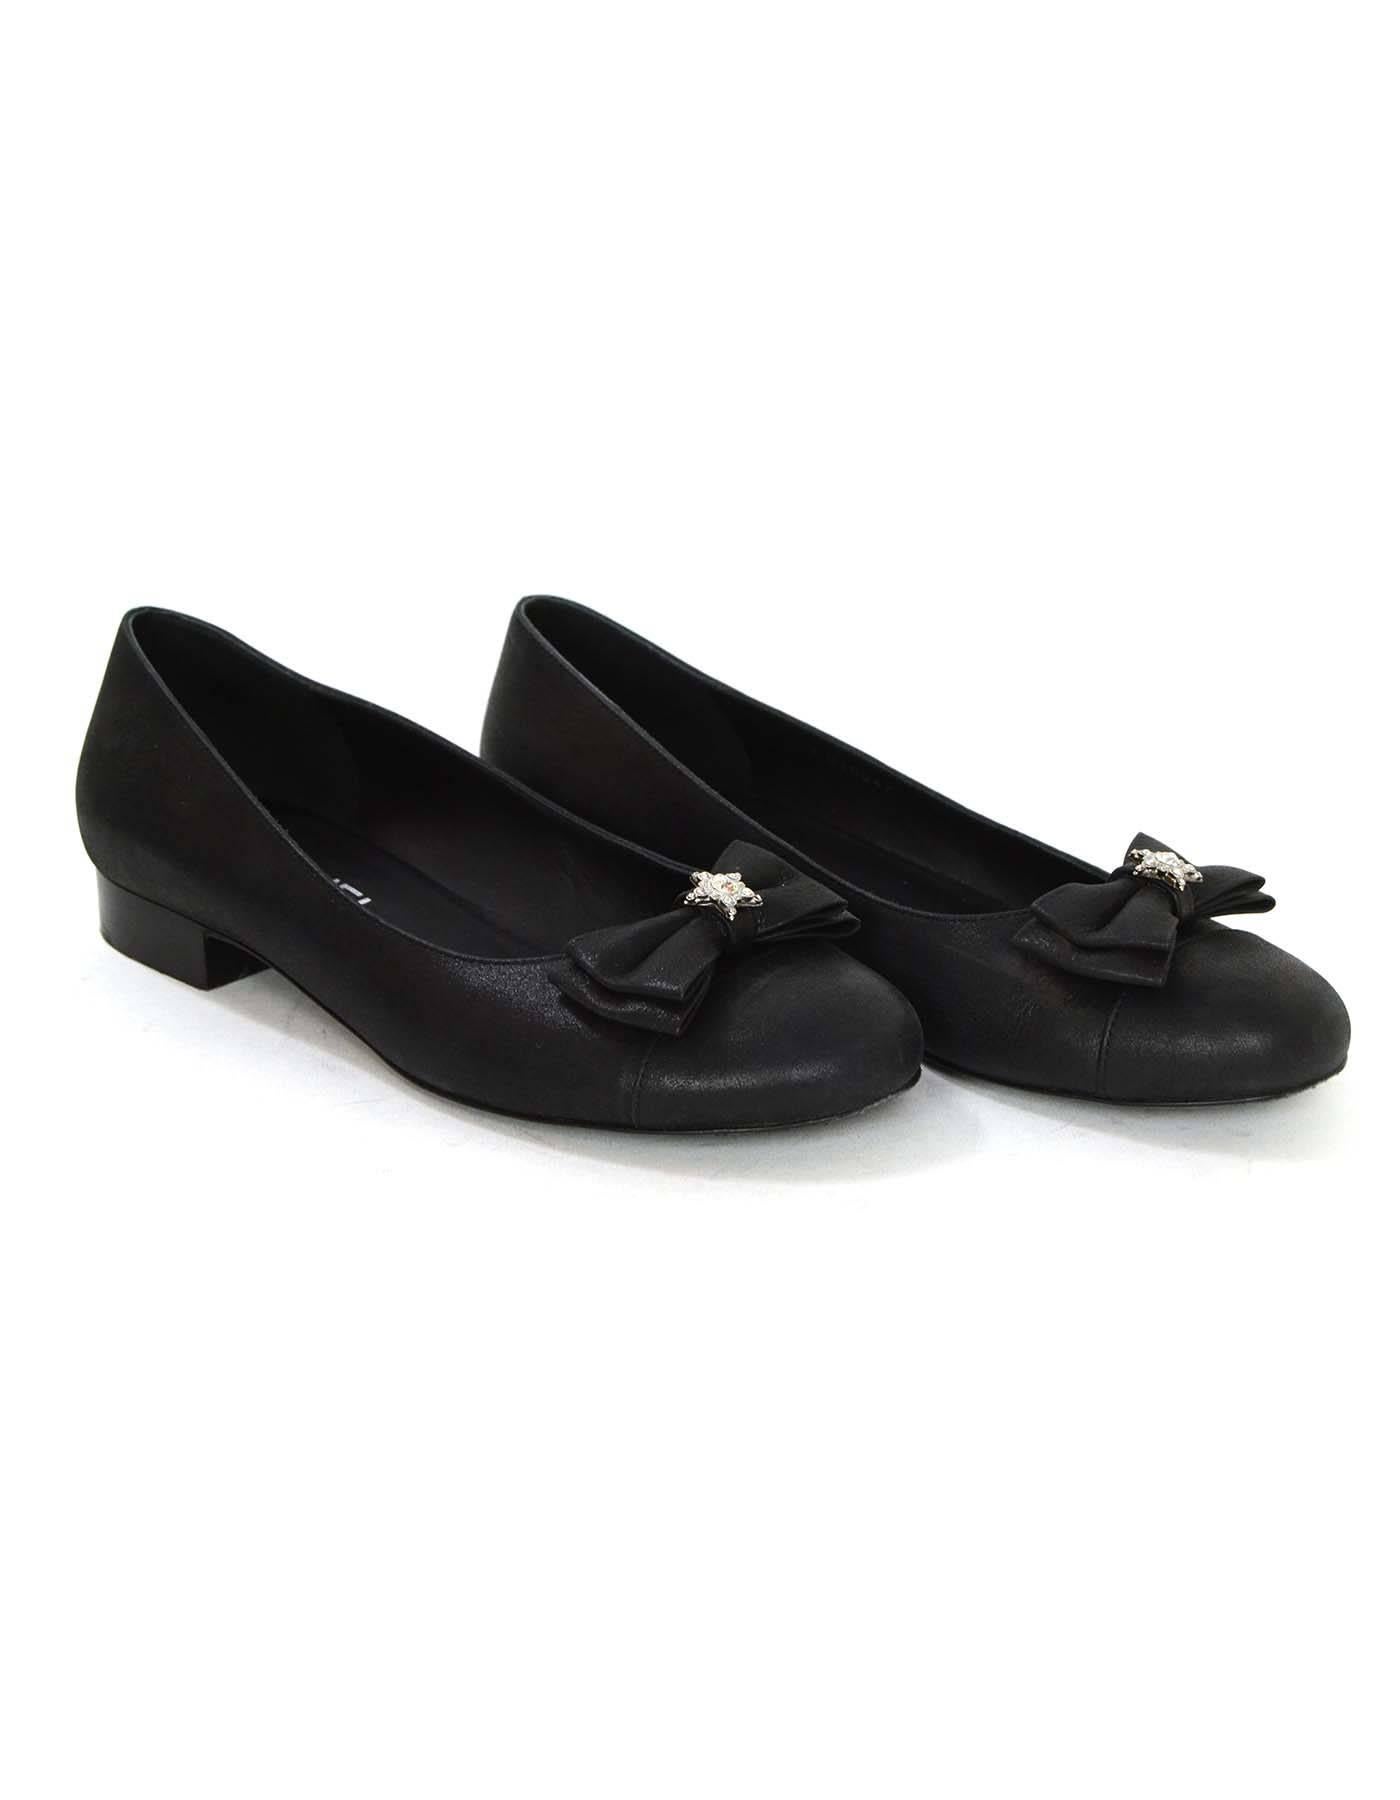 Women's Chanel Black Iridescent Calfskin Flats sz 38